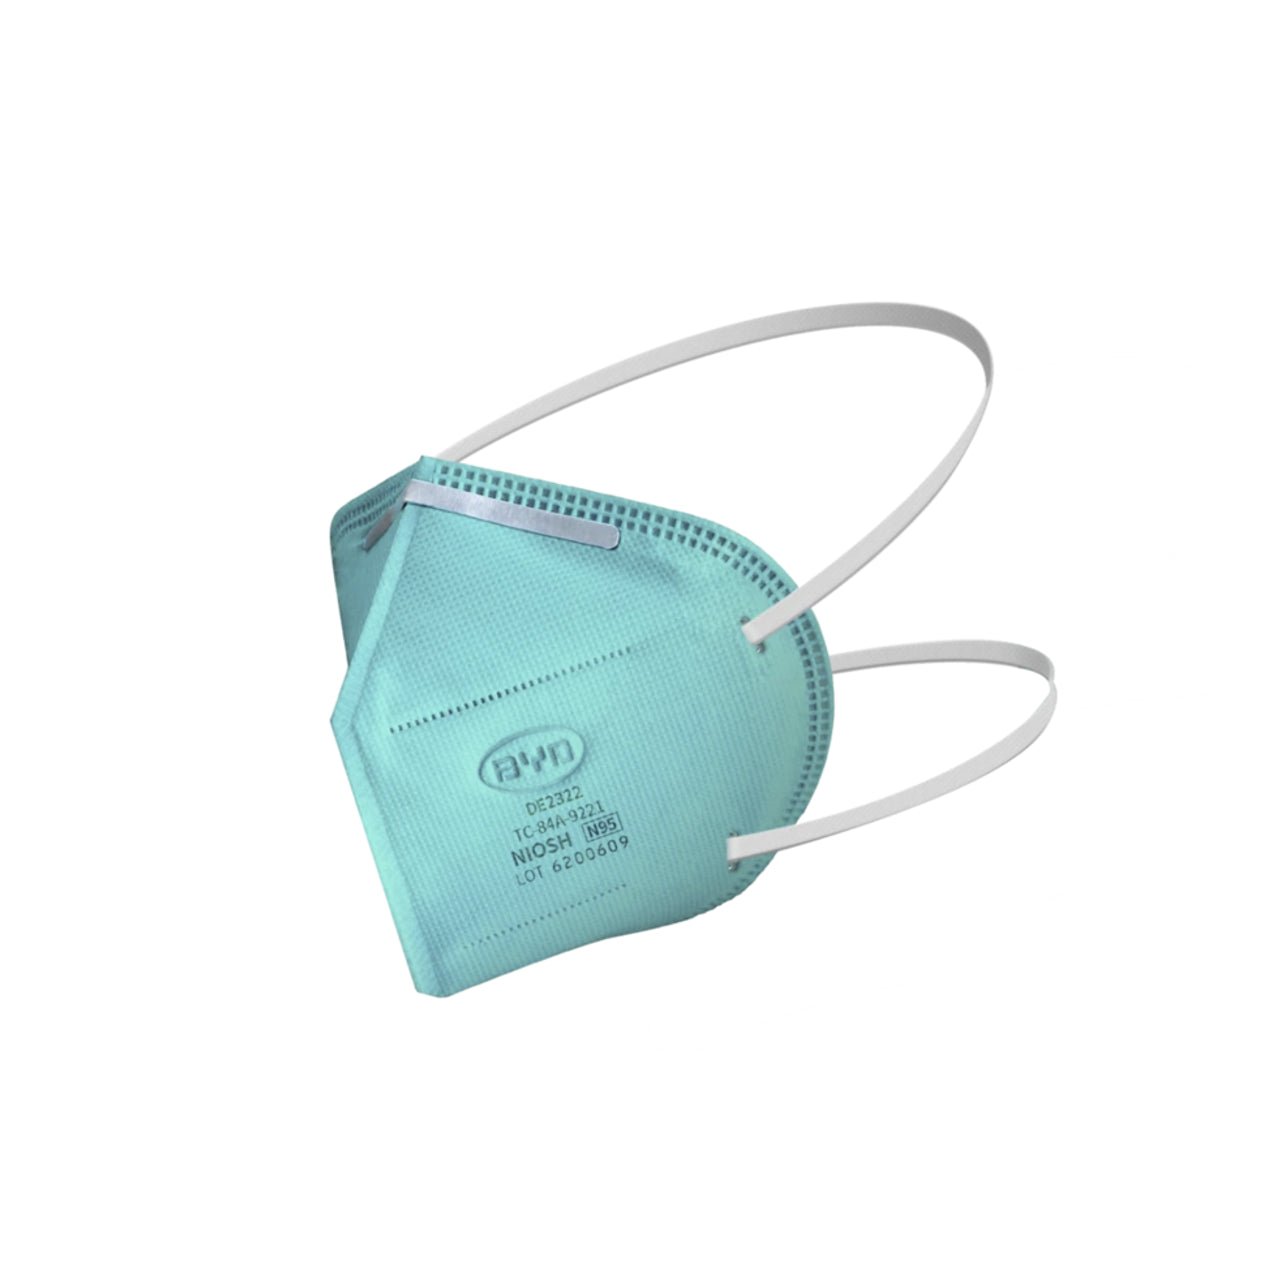 NIOSH BYD N95 Masks - Respirator Face Masks - Defender Safety